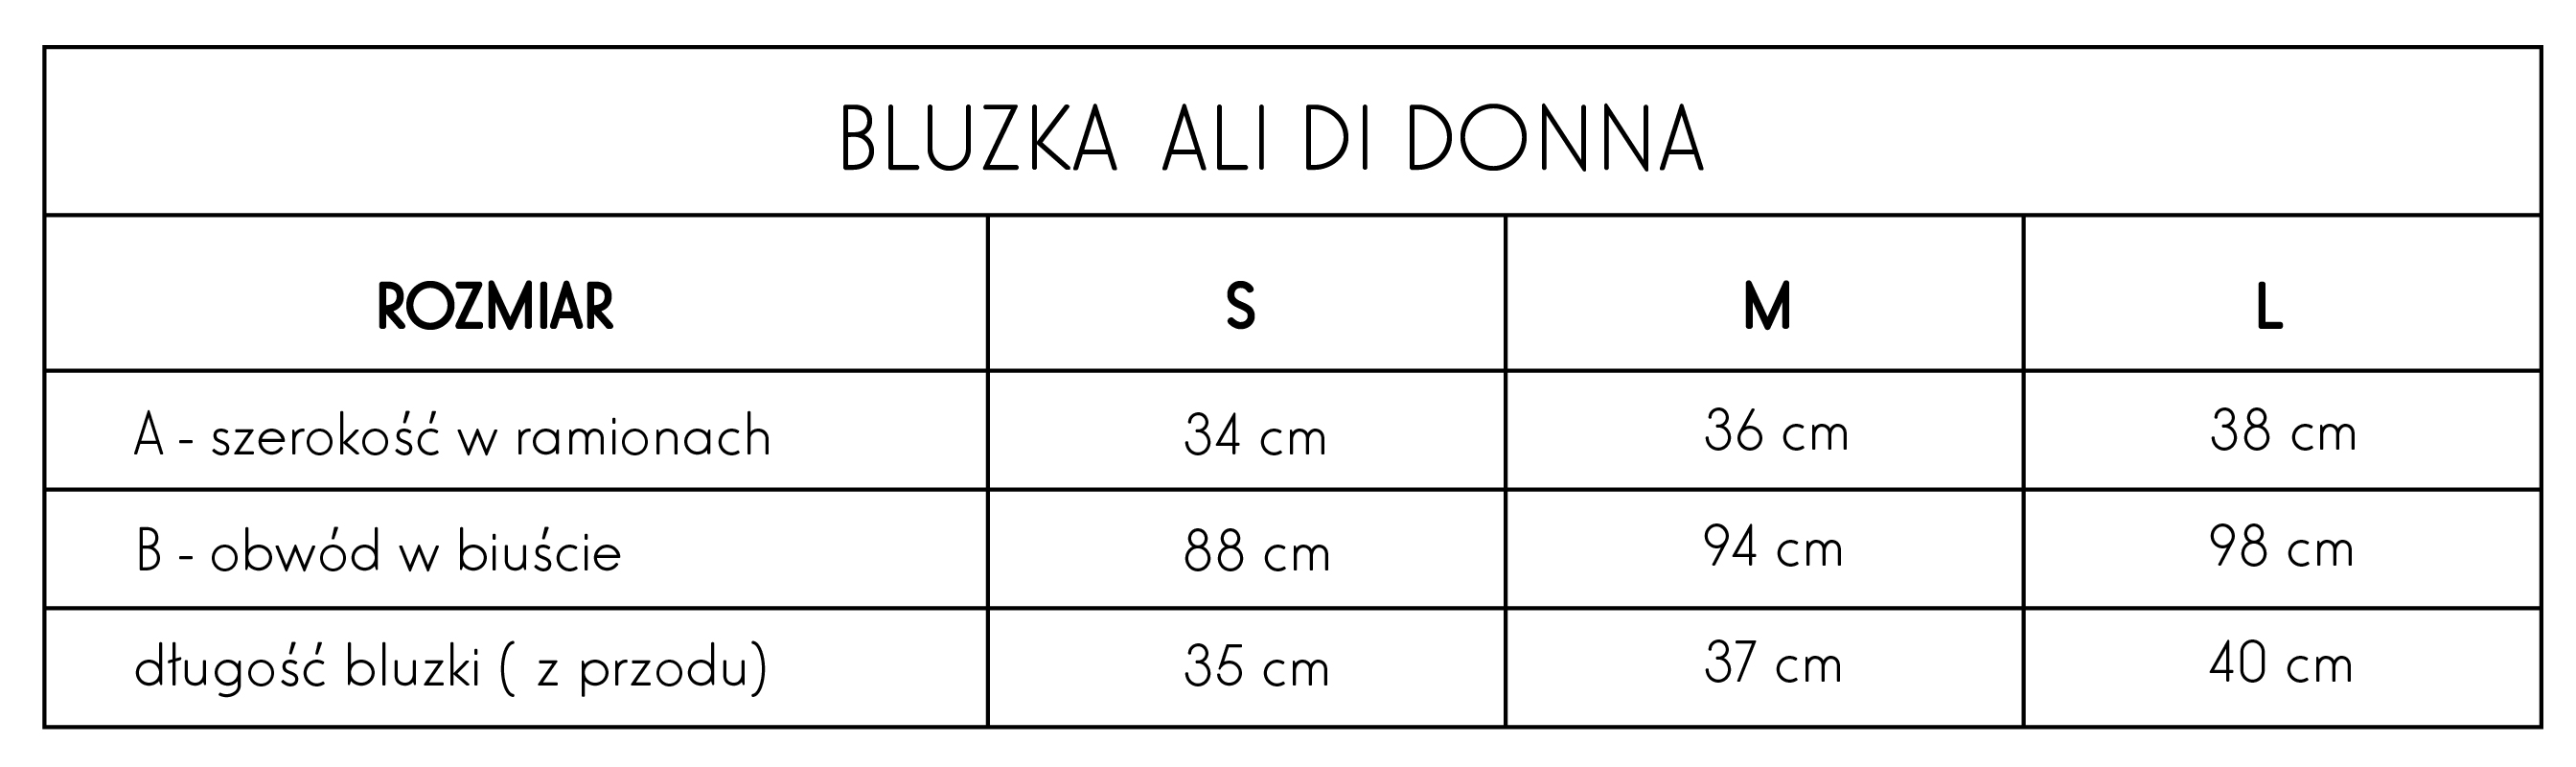 Bluzka Ali di DONNA tabela rozmiarów